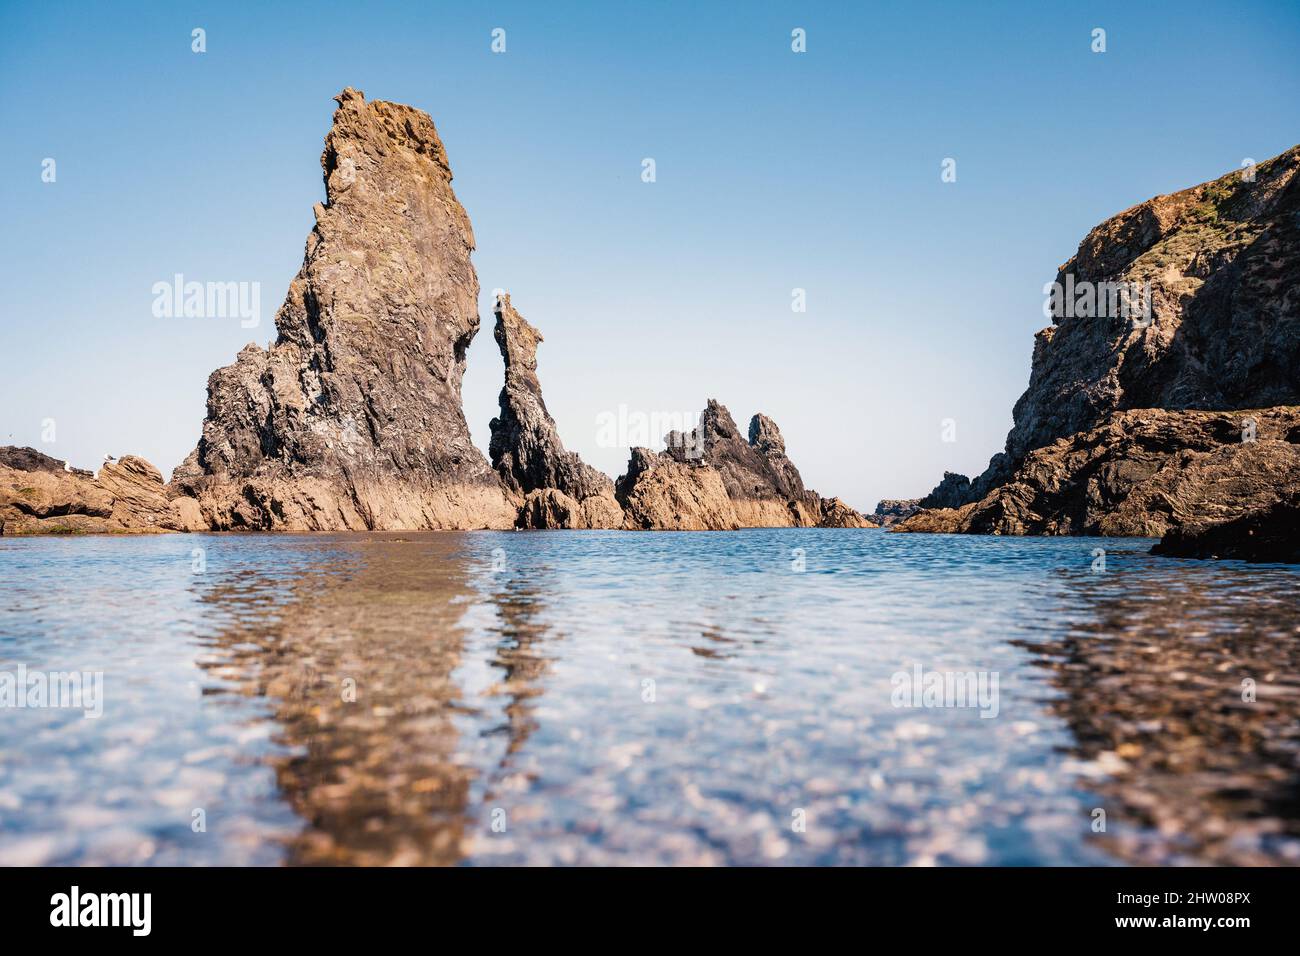 Les Aiguilles formazioni rocciose che sembrano aghi dal mare e sono stati motivi nei dipinti degli impressionisti. Foto Stock